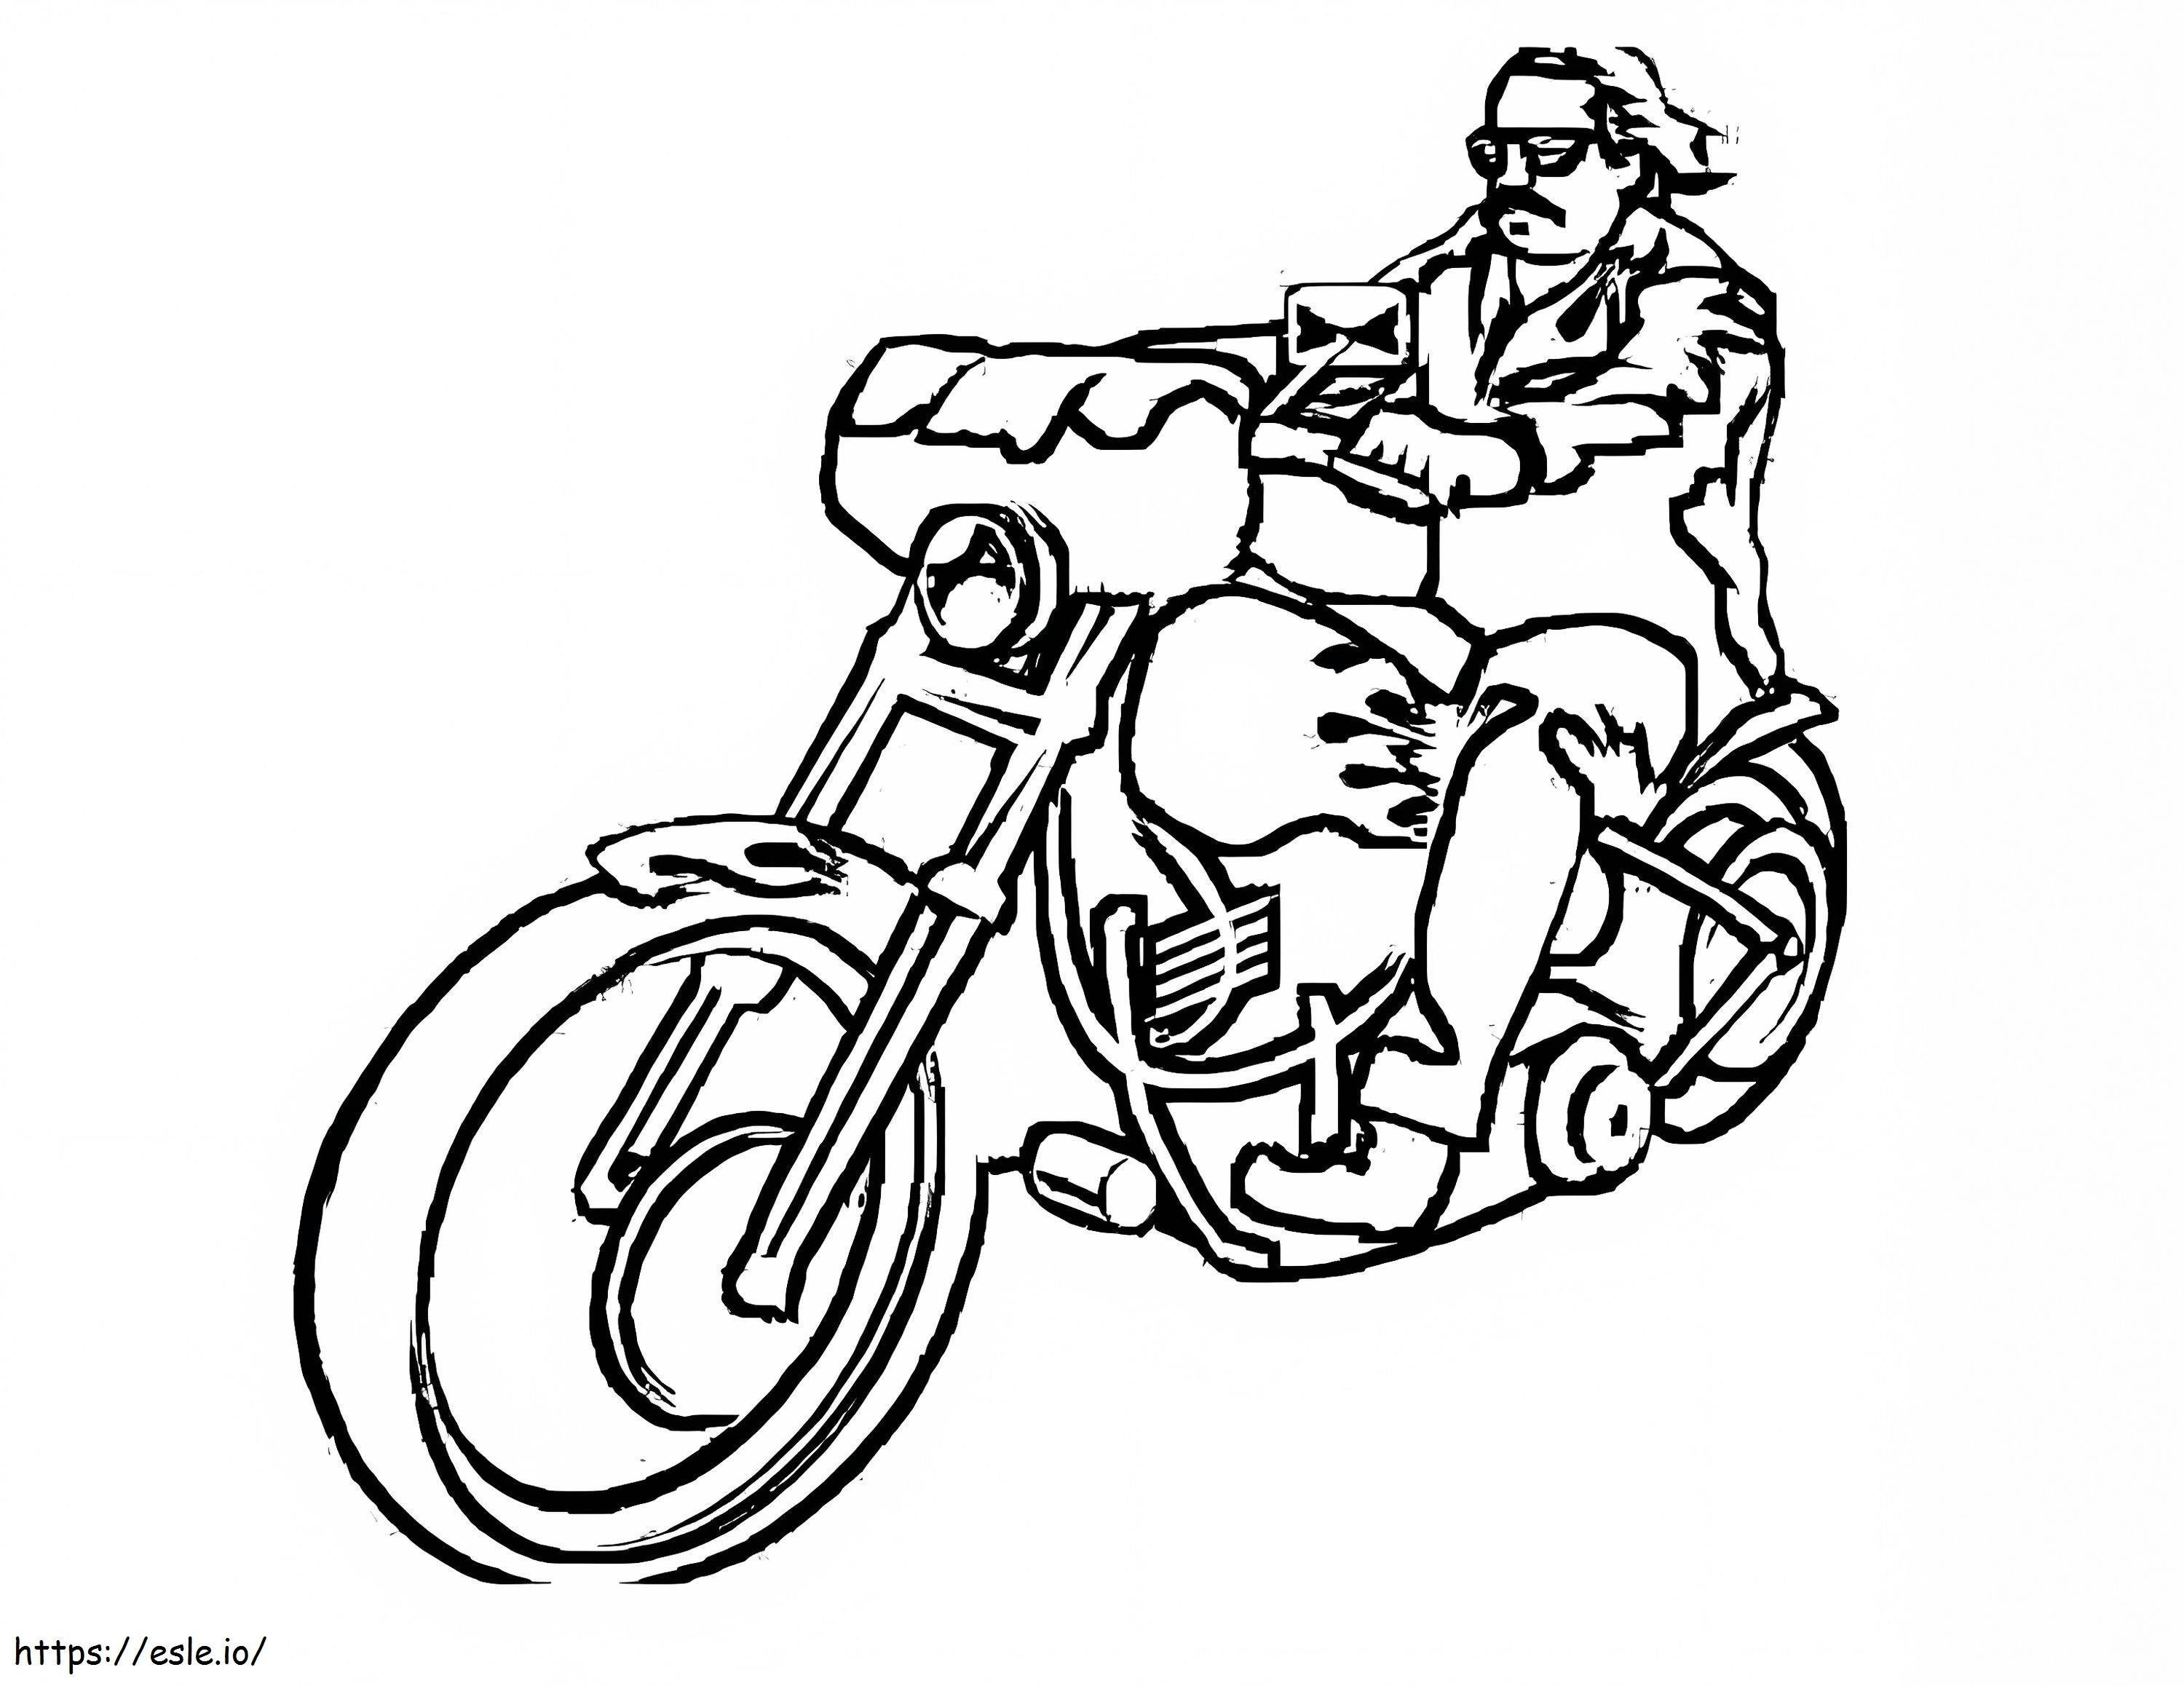 Uomo in sella a una moto da colorare